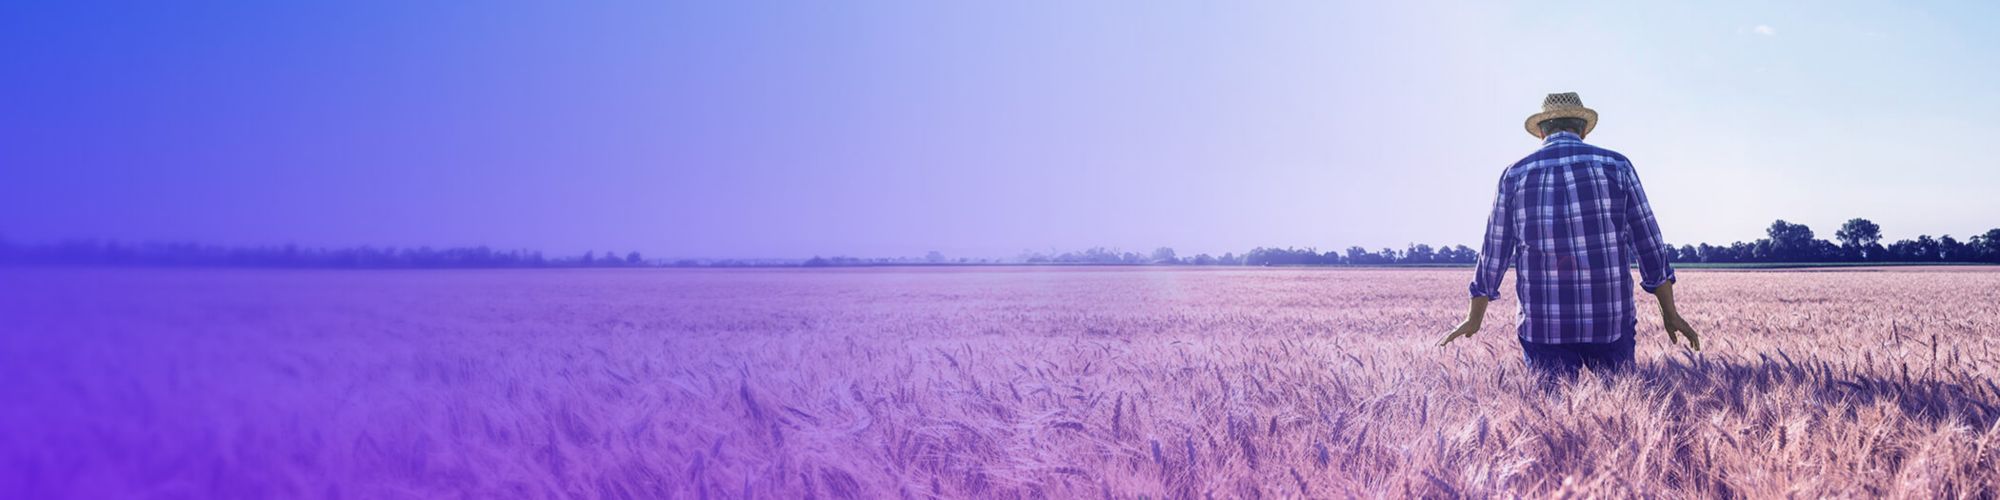 Un fermier marchant dans un champ de blé